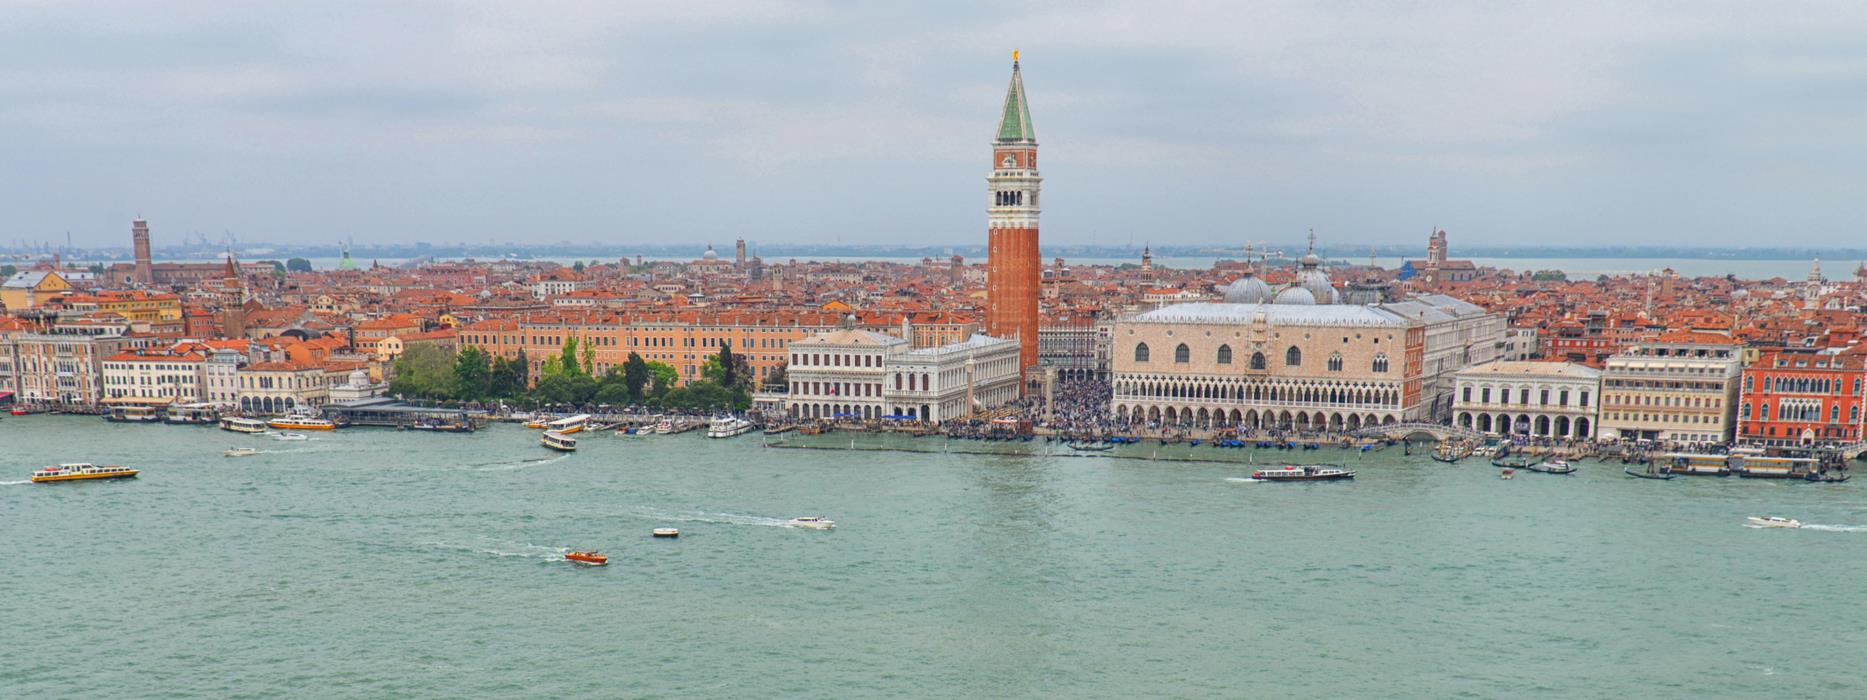 Фотокартина Панорама Венеции